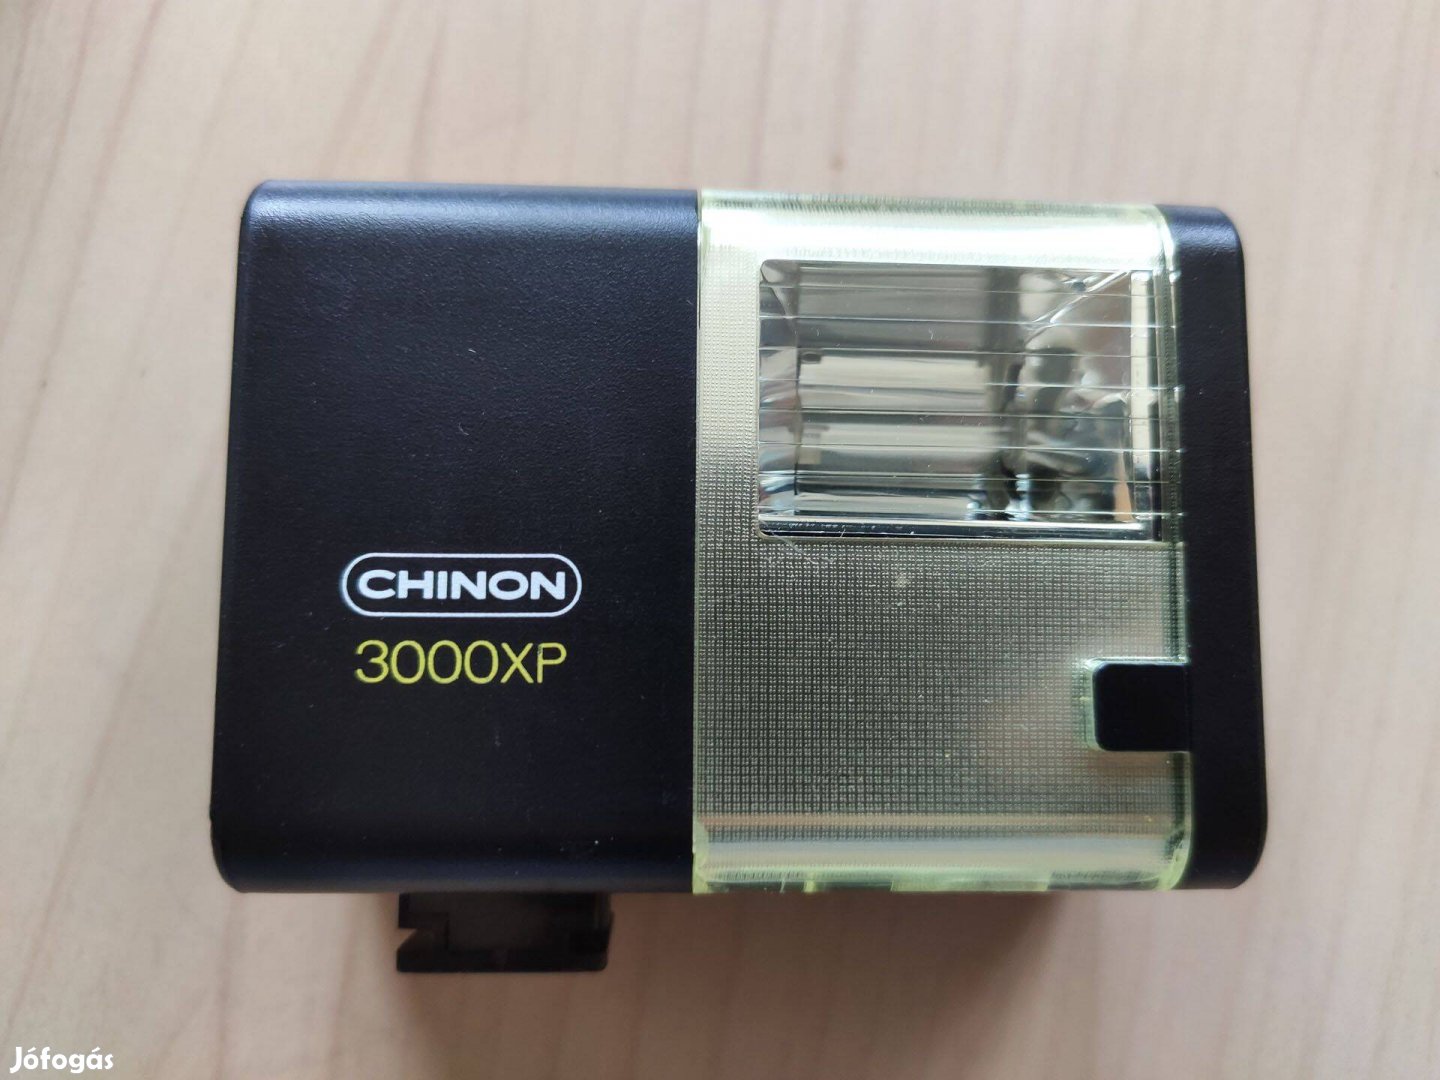 Chinon 3000XP fényképezőgép vaku örökvaku villanó